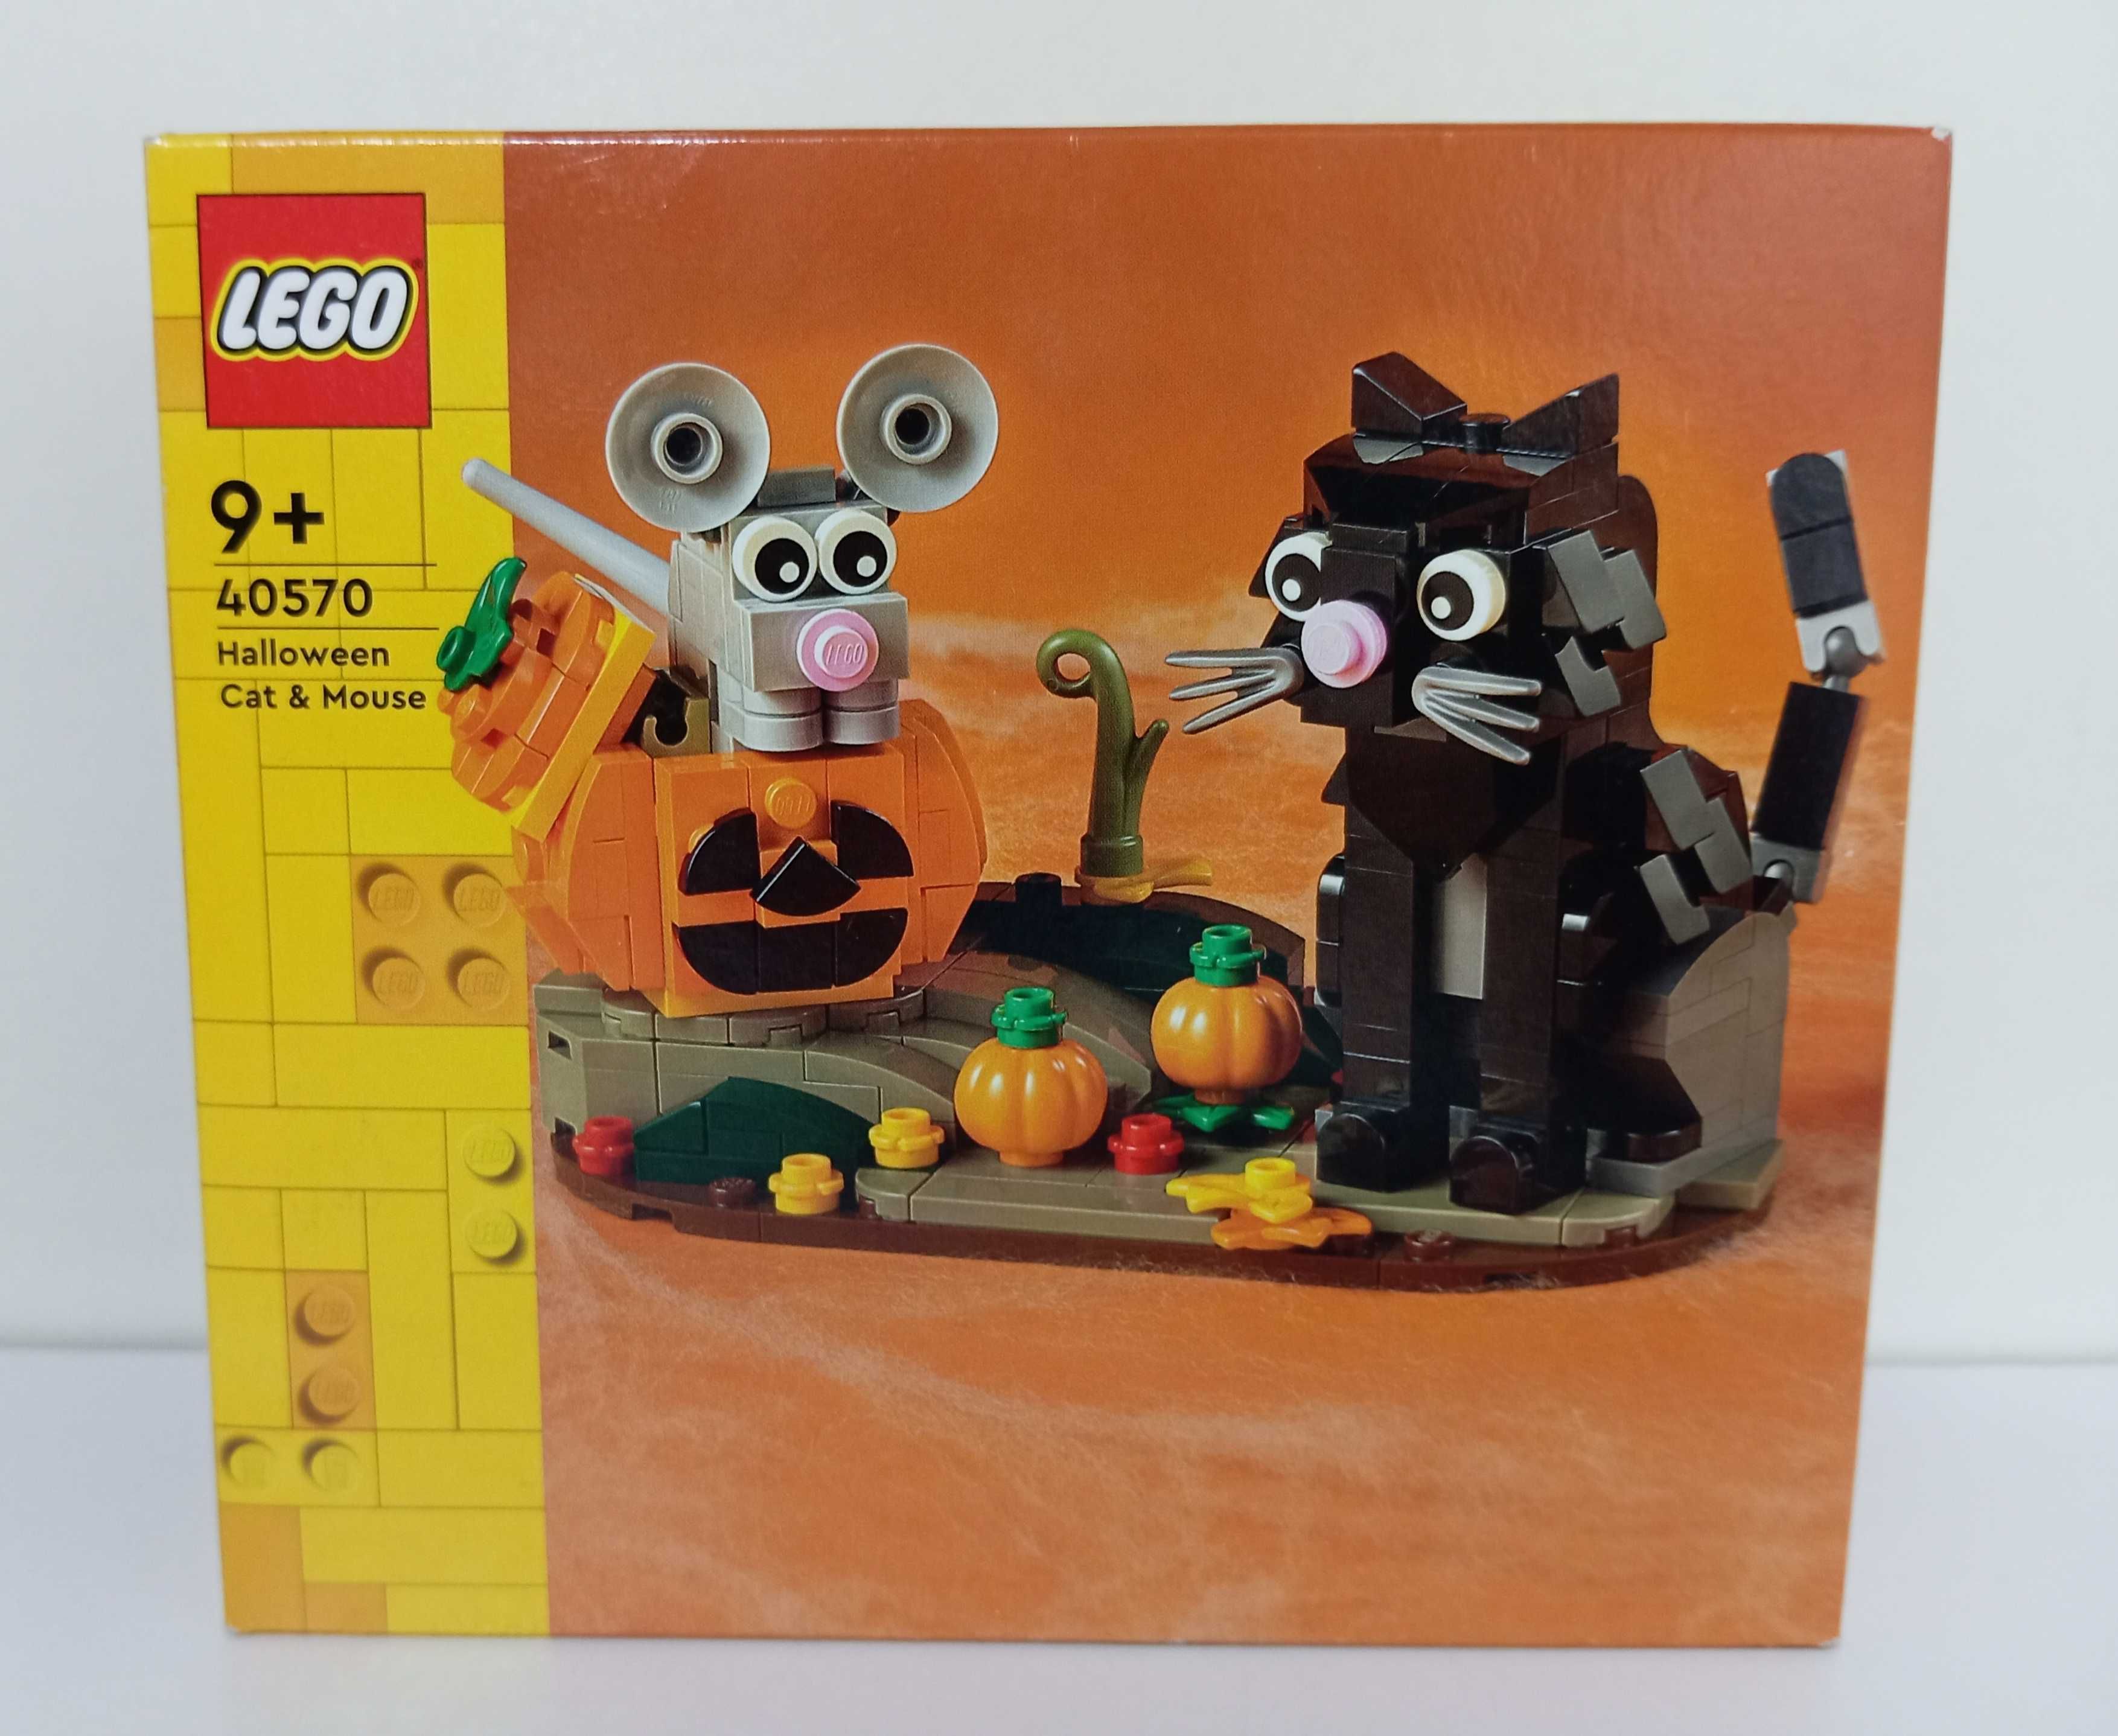 LEGO kot i mysz 40570 halloween